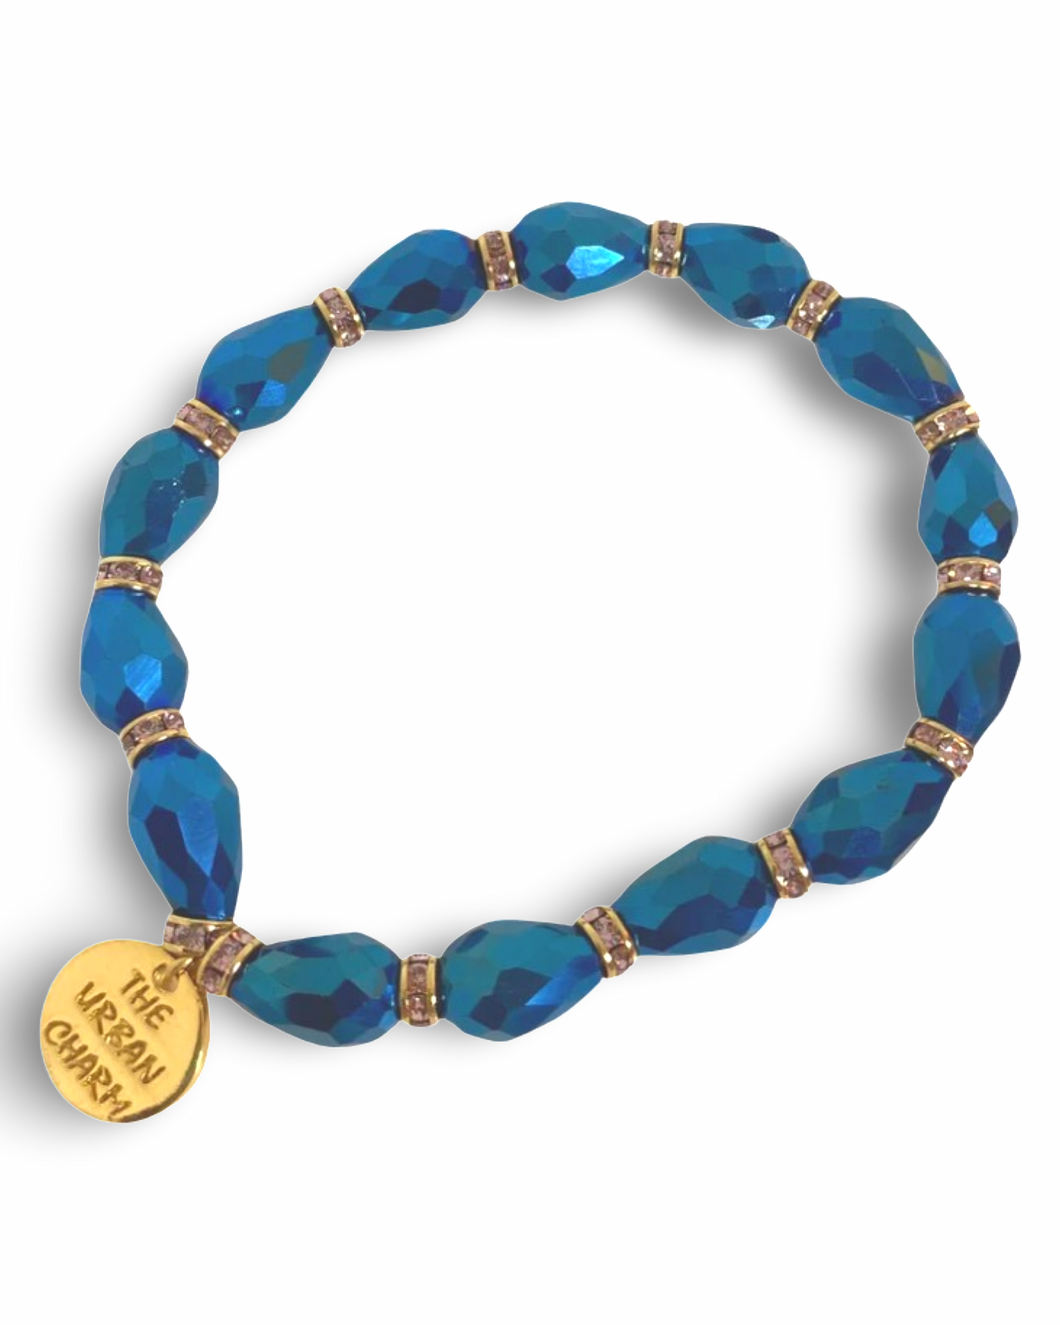 Metalic Blue Faceted Crystal Bracelet